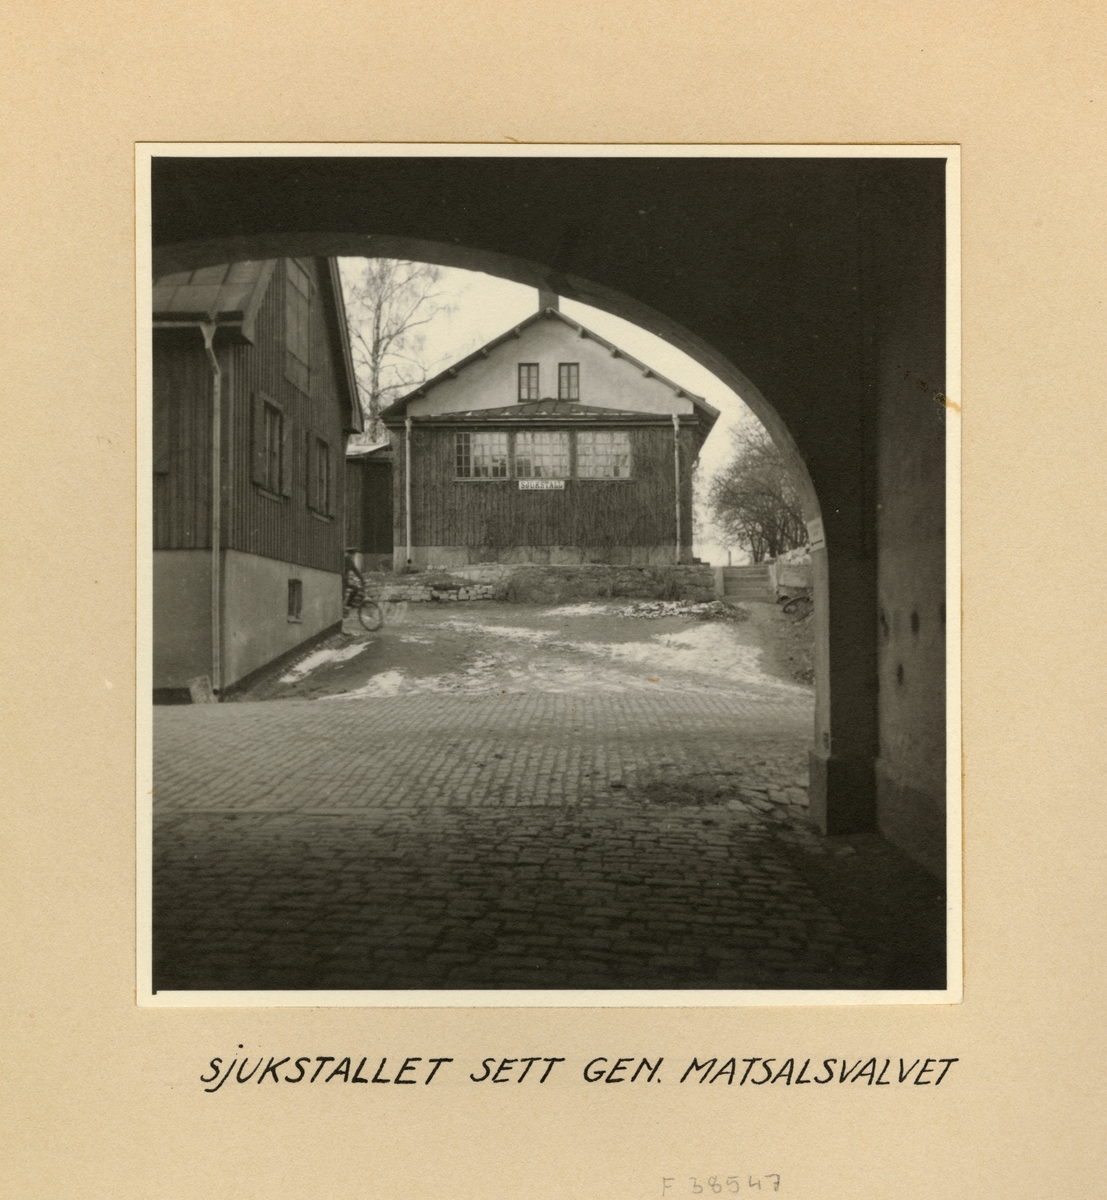 Sjukstallet sett genom matsalsvalvet, Svea artilleriregemente A 1, våren 1947.